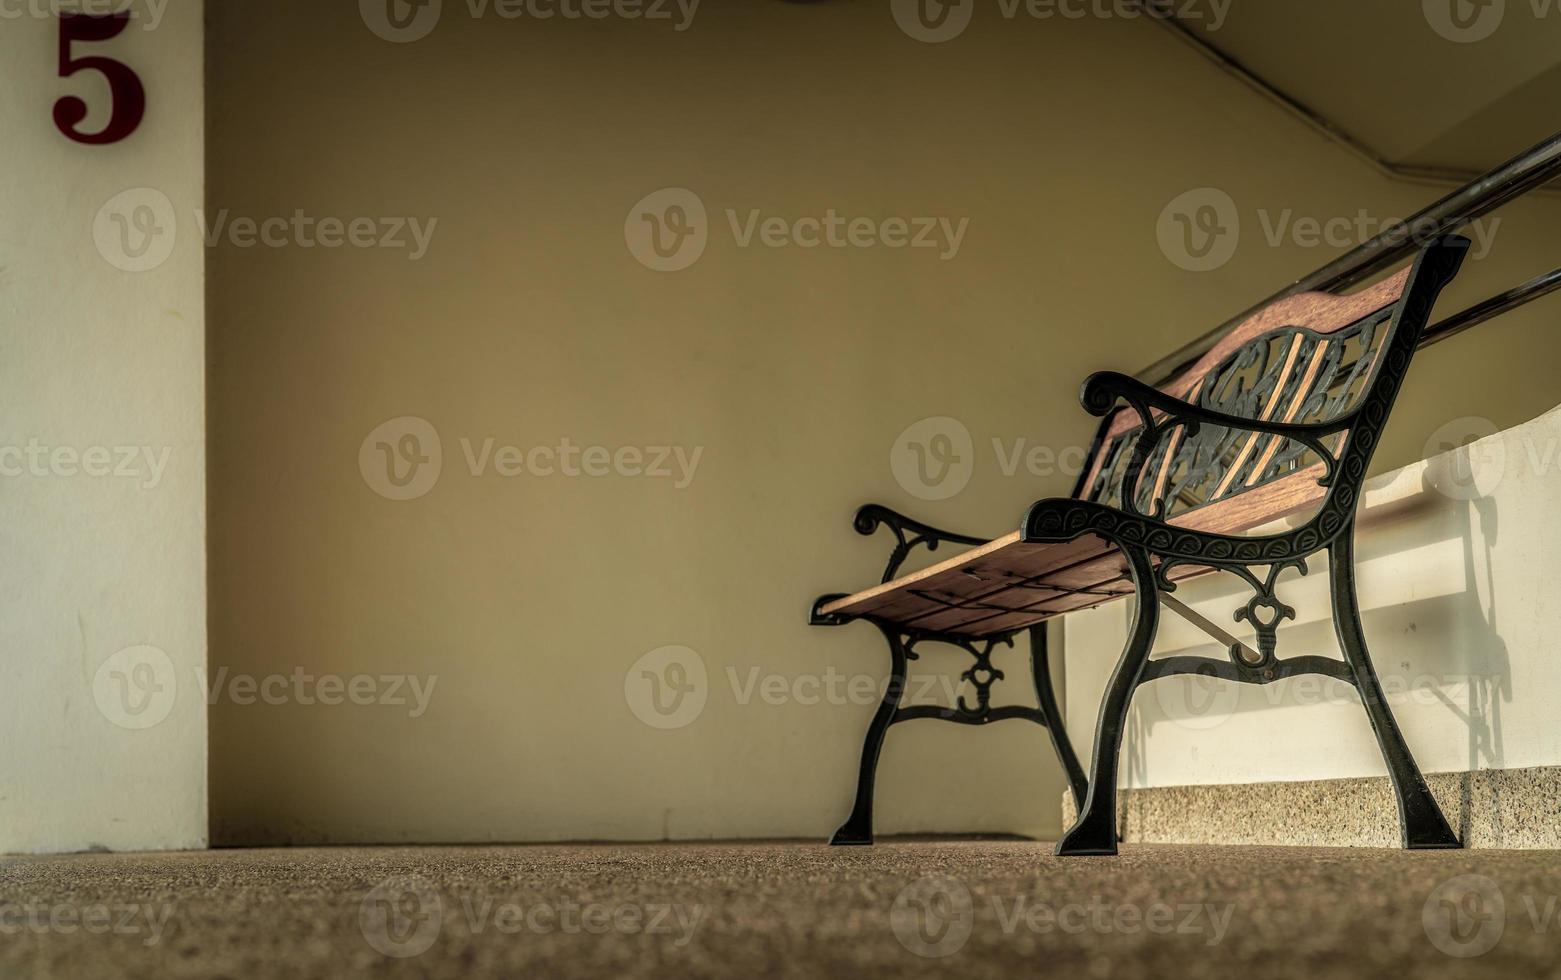 panca vuota in ferro battuto posta vicino alle scale dell'edificio. concetto depresso, triste e solitario. una panca vuota in ferro battuto. panca singola in condominio. concetto solitario. foto